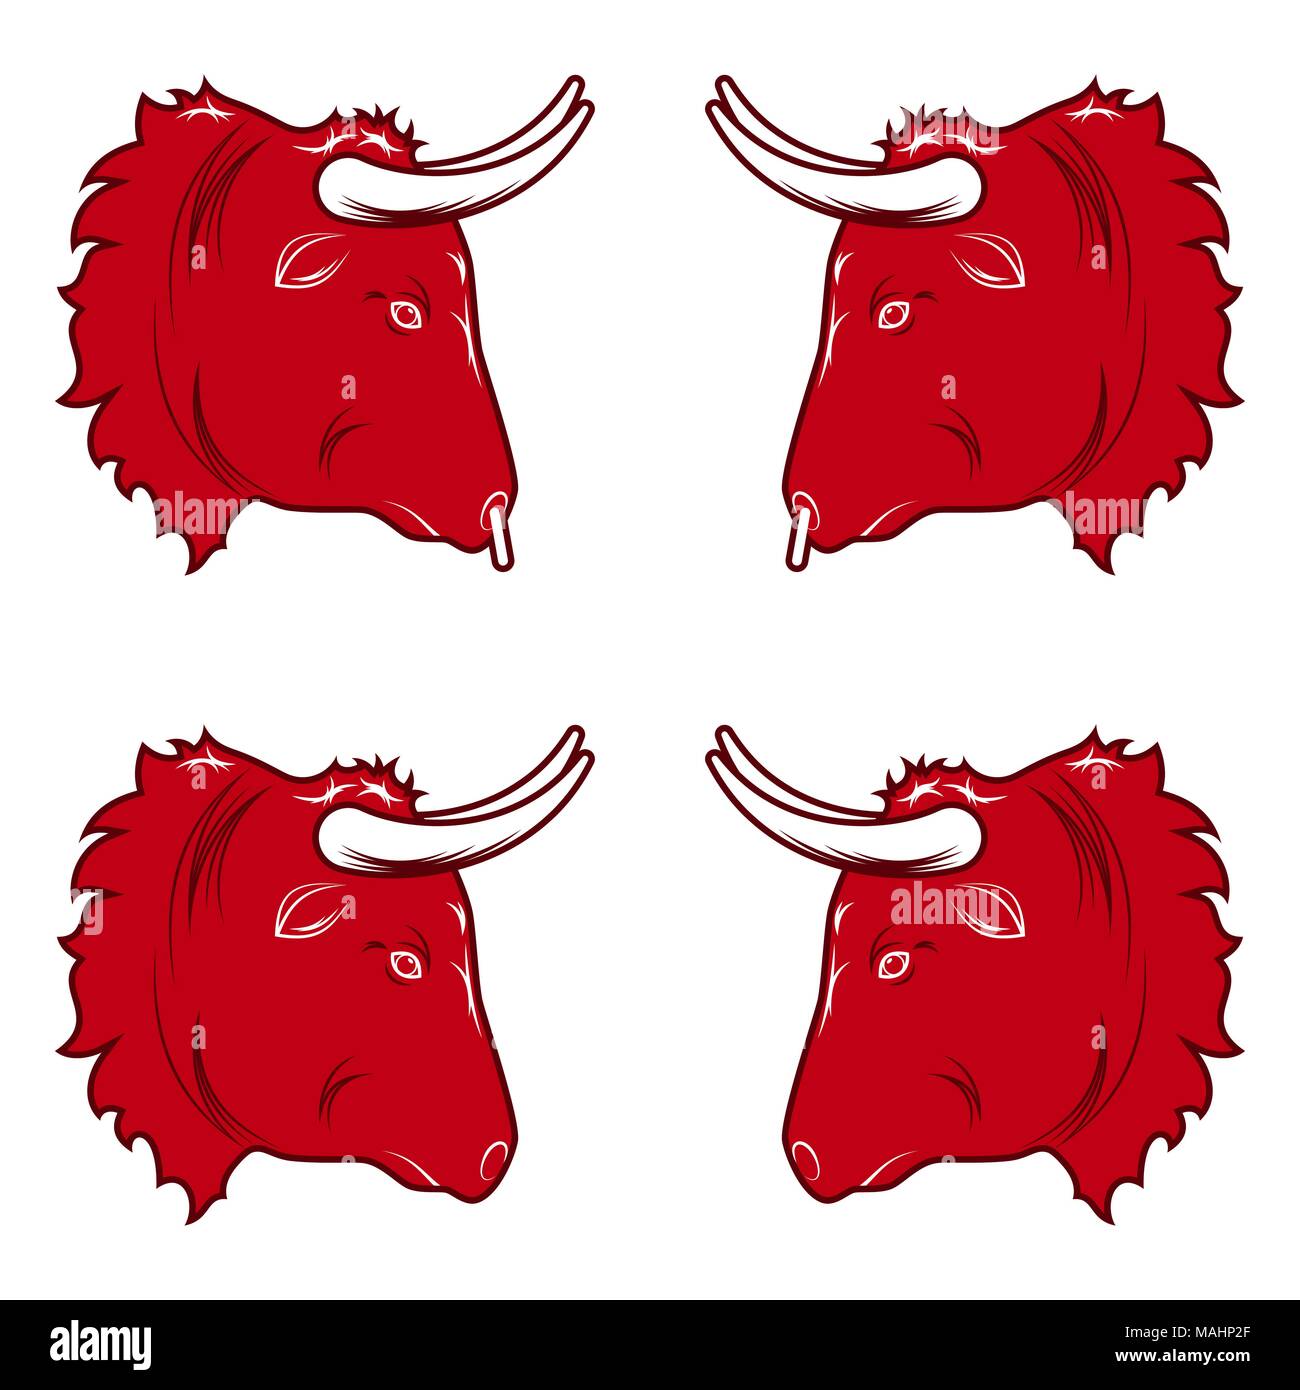 Design stilizzato di testa di toro. Illustrazione Vettoriale di testa di toro in colore rosso, con e senza un anello al naso. Vettore silhouette bull Illustrazione Vettoriale